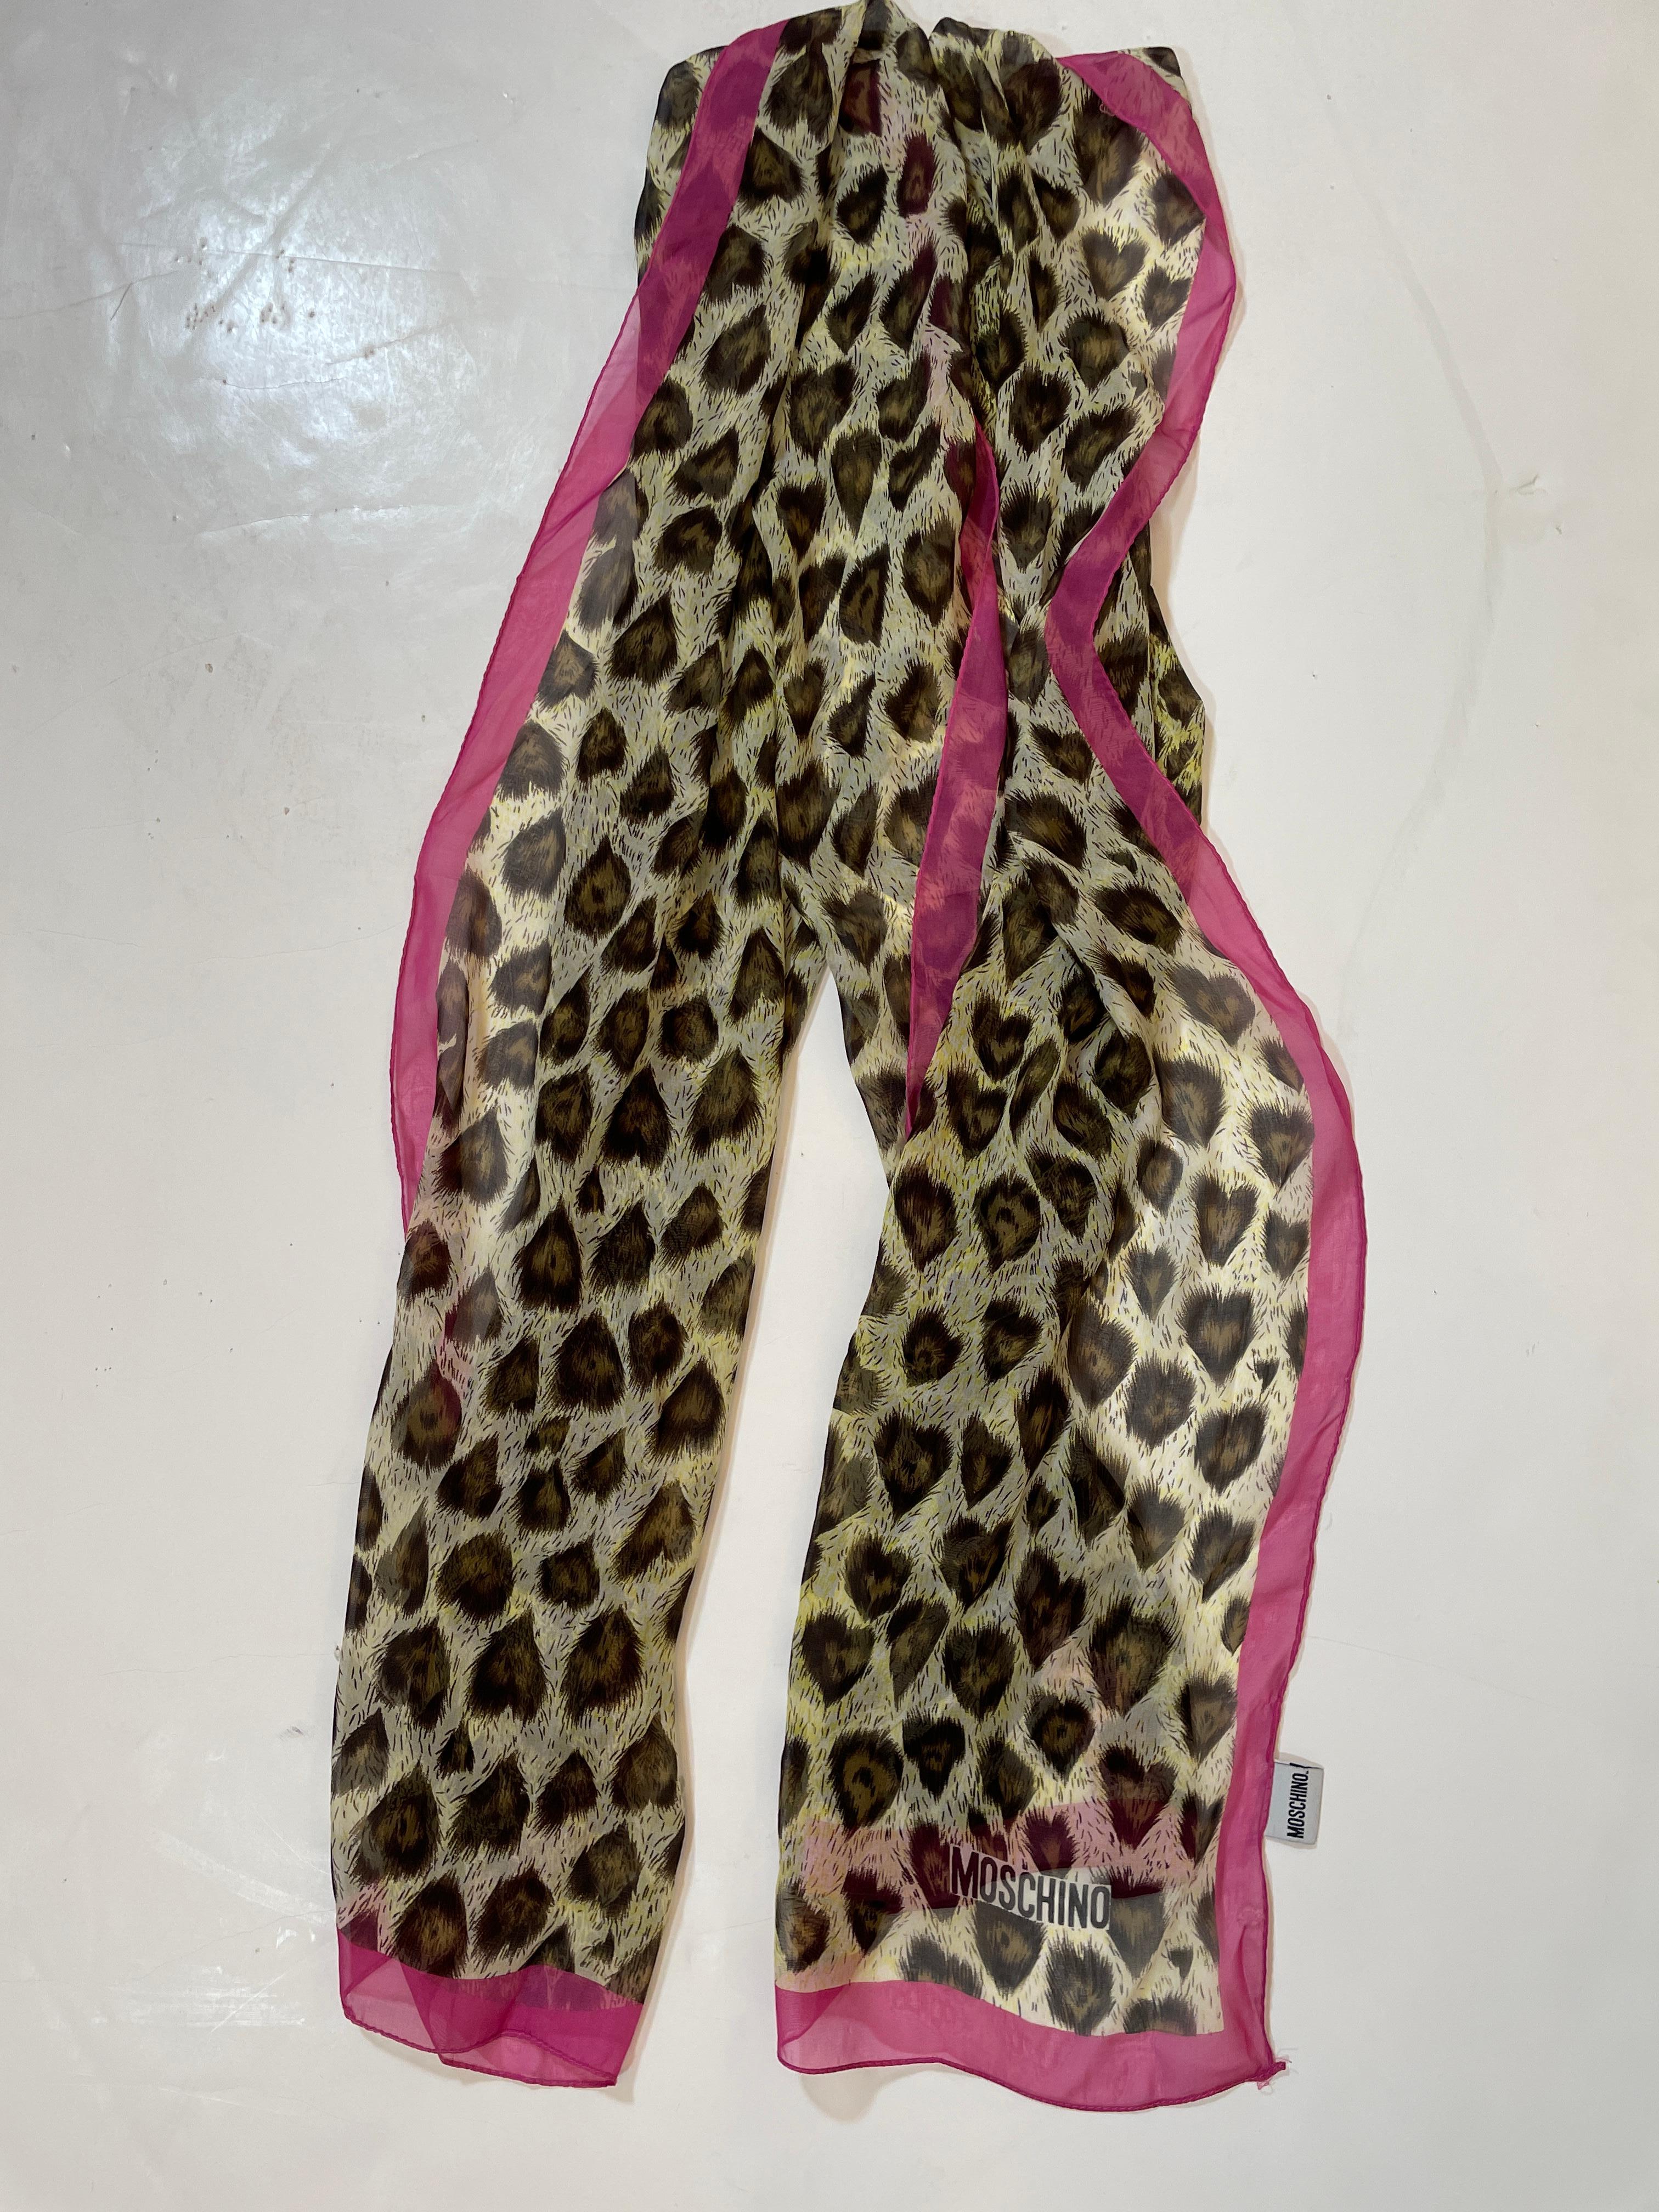 Moschino Milano Tierdruck Seide Chiffon Schal Made in Italy Rosa und Braun 1990er Jahre.
Damen fuchsia hot pink mit braunem Leoparden- oder Pfauenfederdruck Seidenschal oder Kopfbedeckung, Gürtel oder Haarband.
 Exquisiter langer Vintage-Schal aus